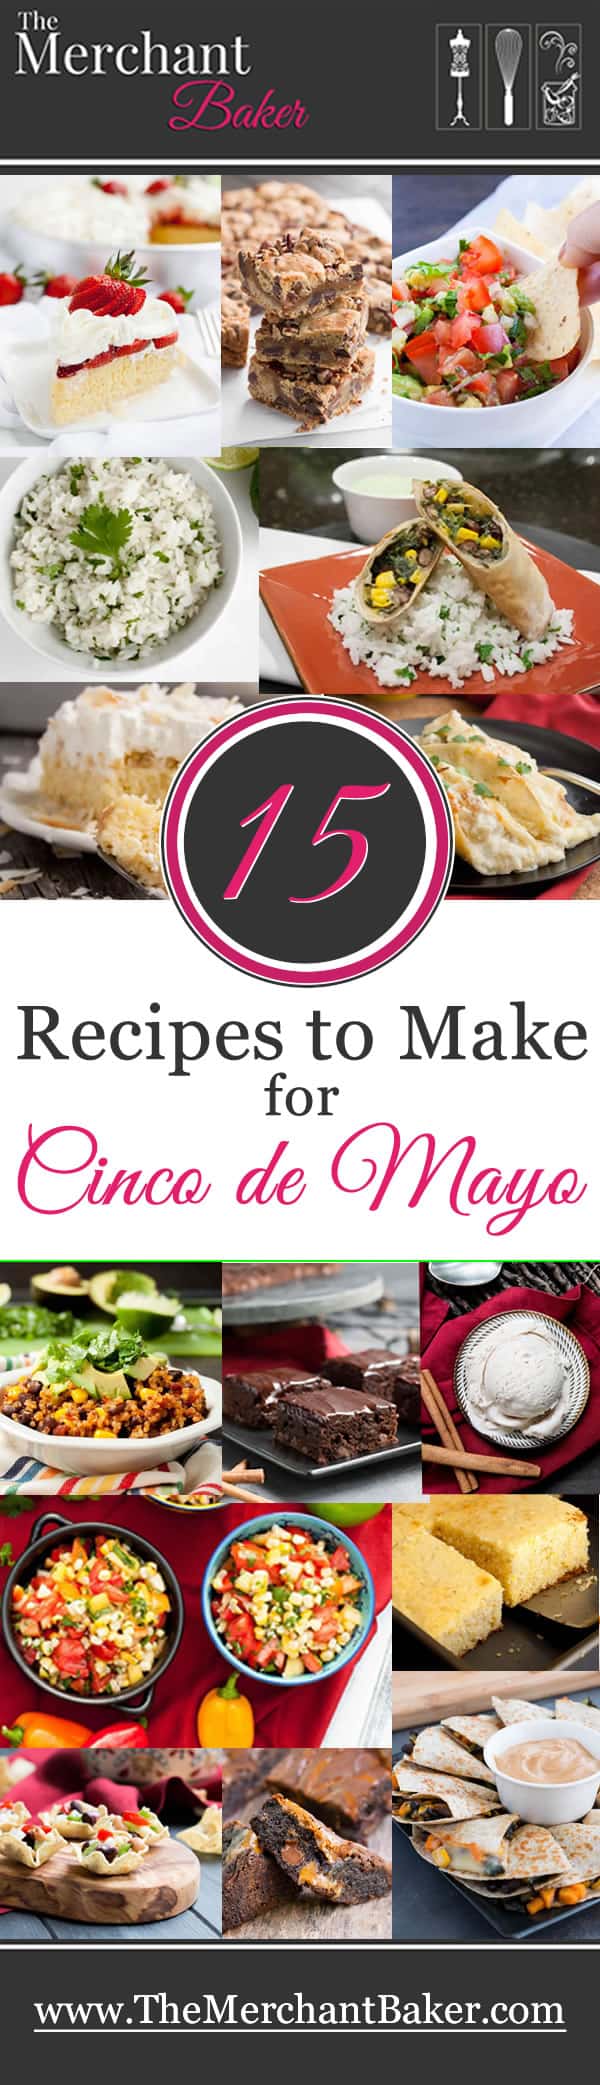 15 Recipes to Make for Cinco de Mayo